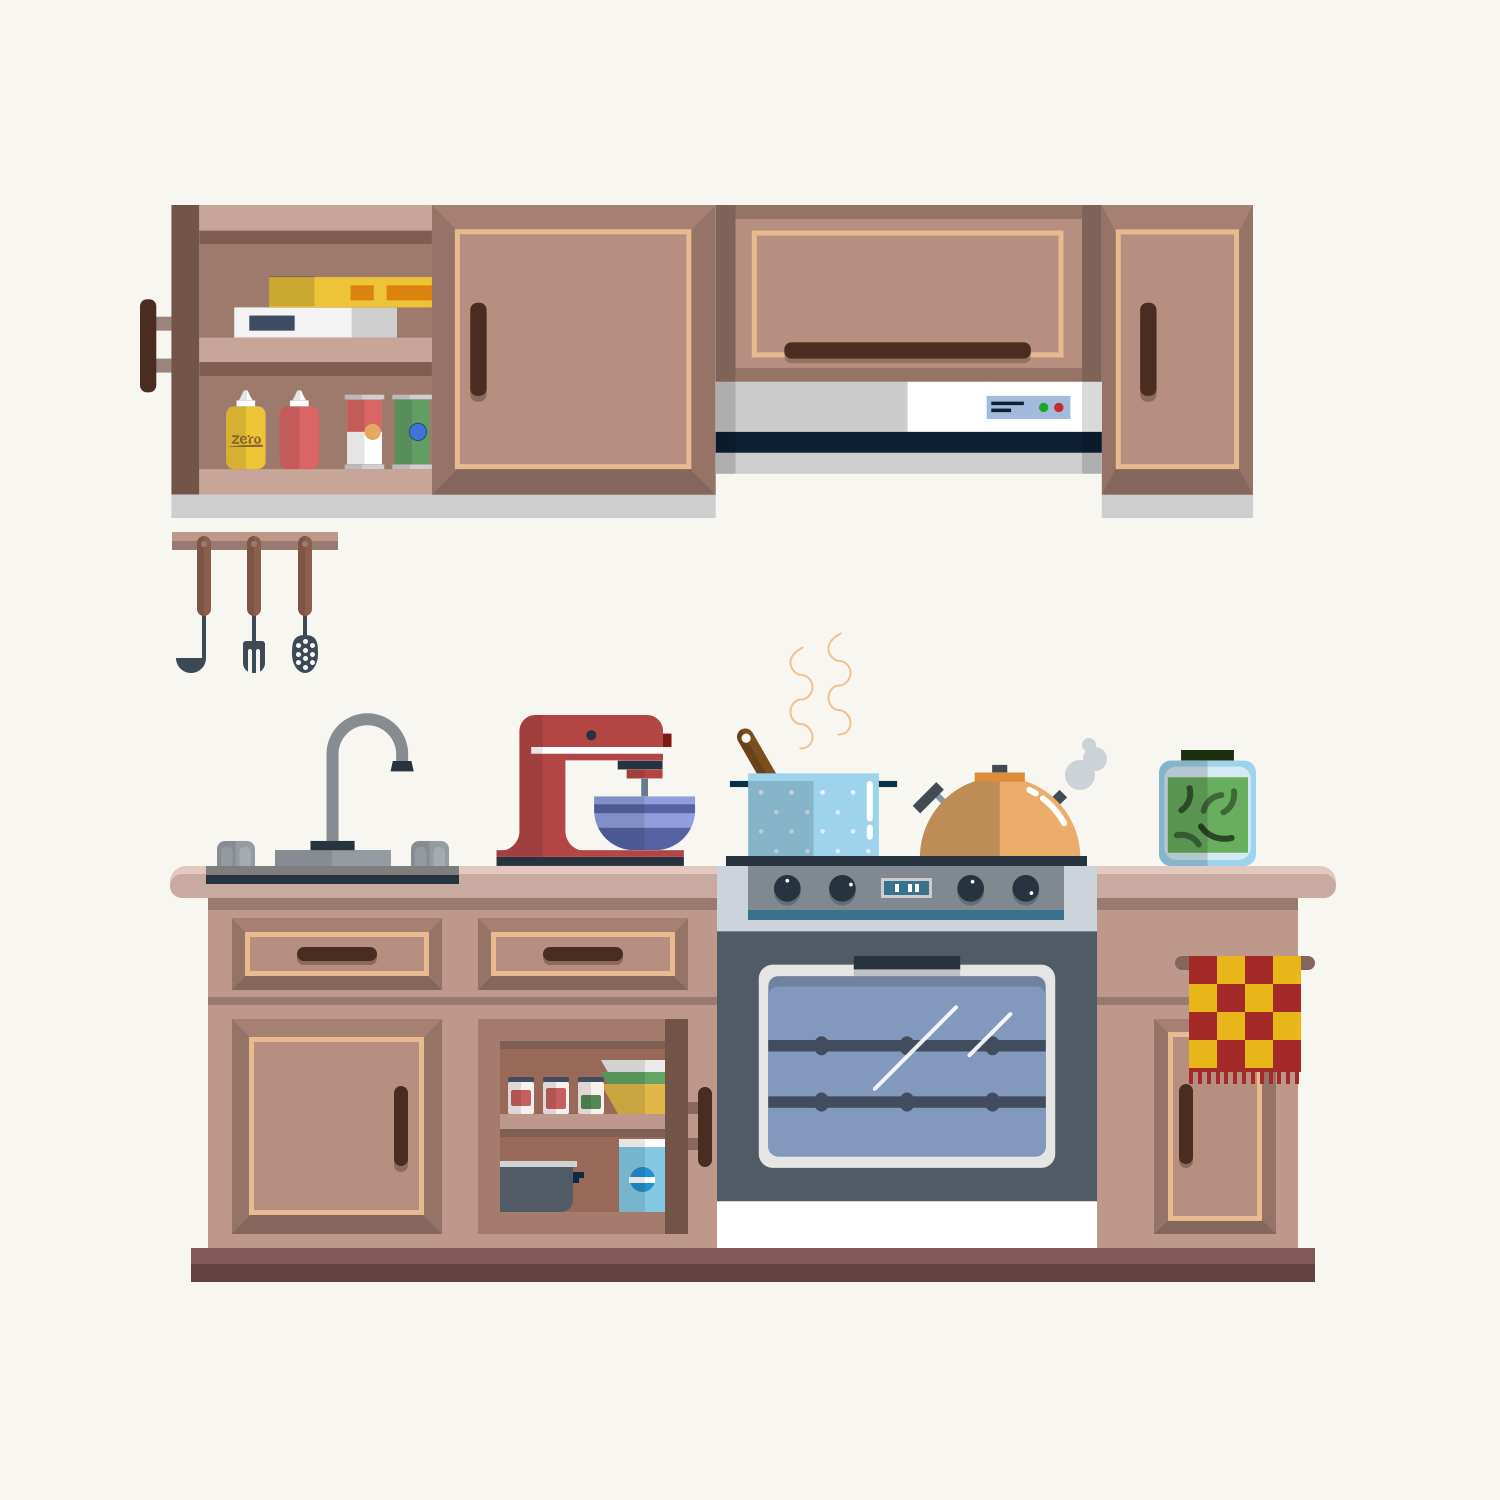 关于厨房橱柜的室内设计手绘线稿！-建E网设计资讯-室内设计行业头条资讯新闻网站